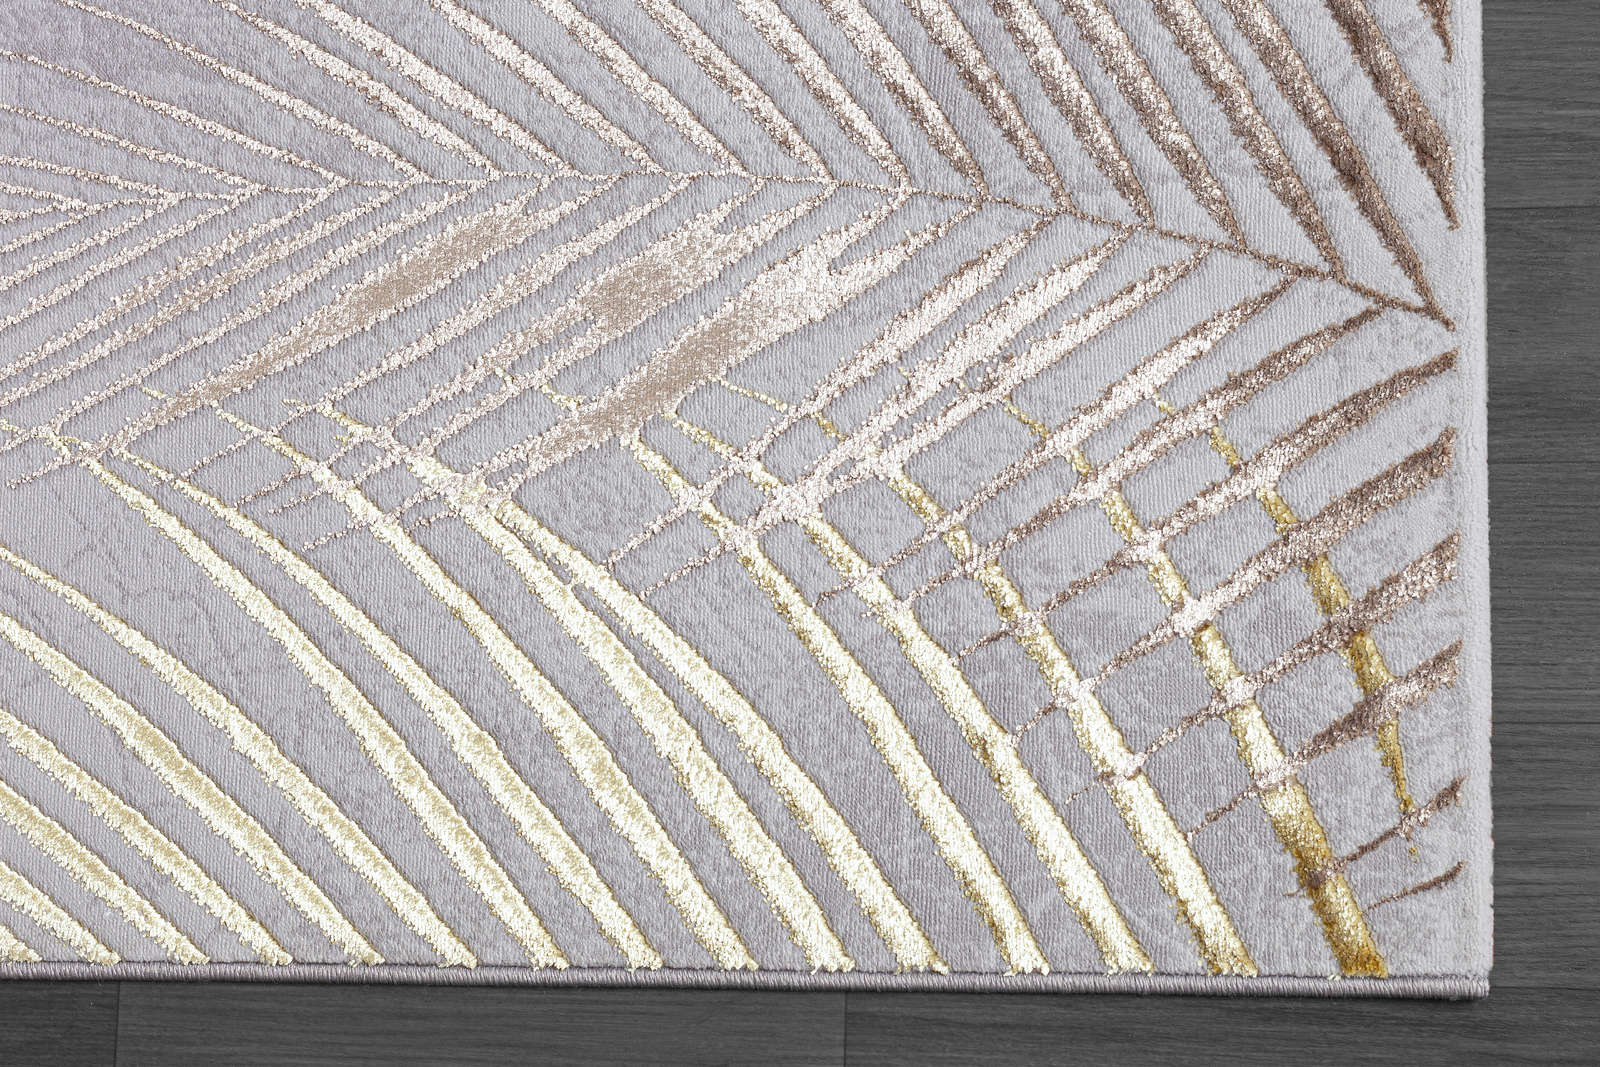             Knuffelzacht hoogpolig tapijt in grijs als loper - 170 x 120 cm
        